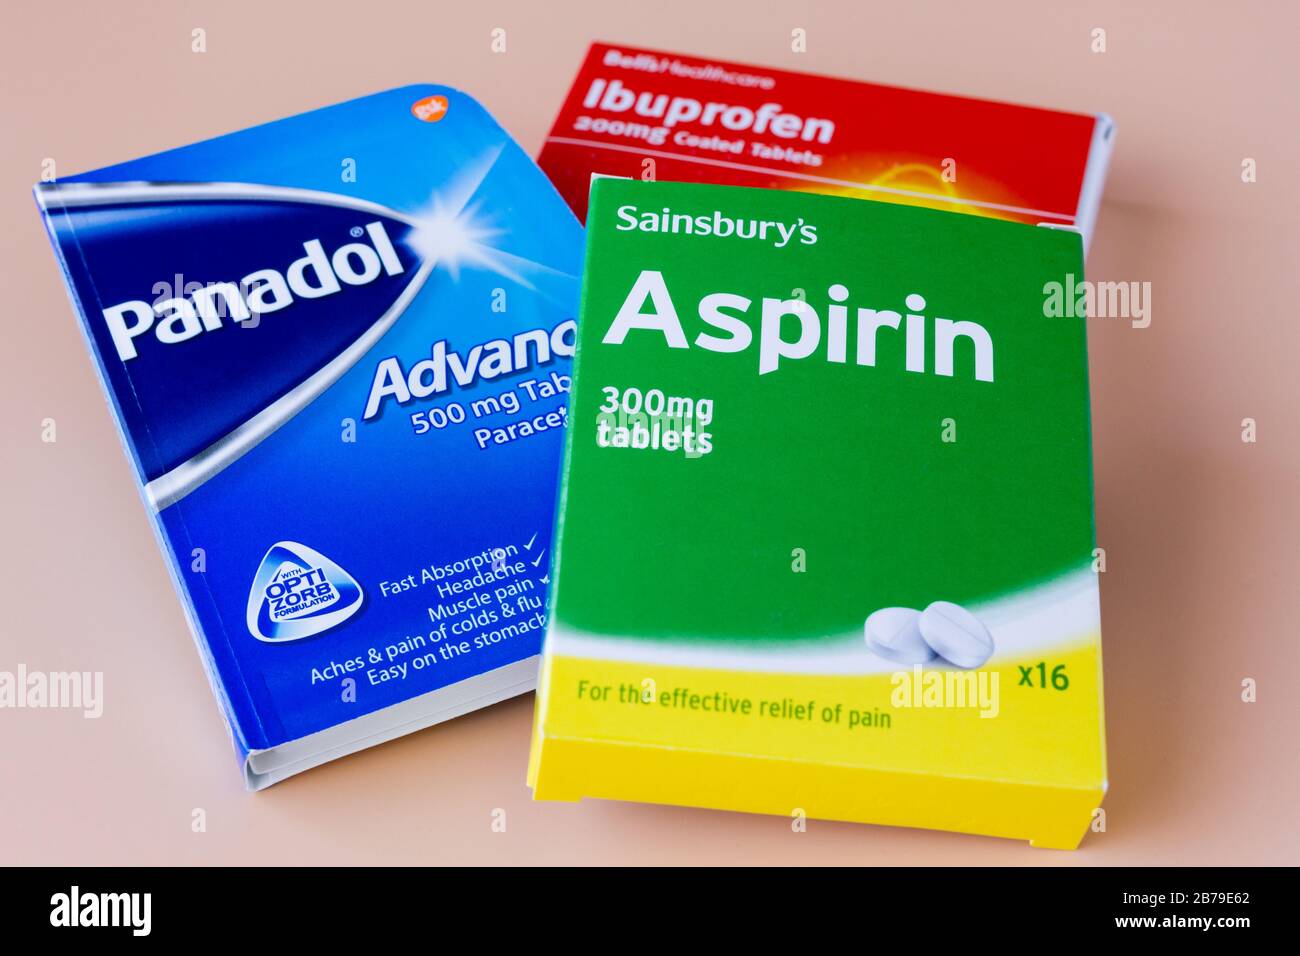 Commun sur le soulagement de la douleur contre, Panadol paracétamol, aspirine et ibuprofène. Royaume-Uni Banque D'Images